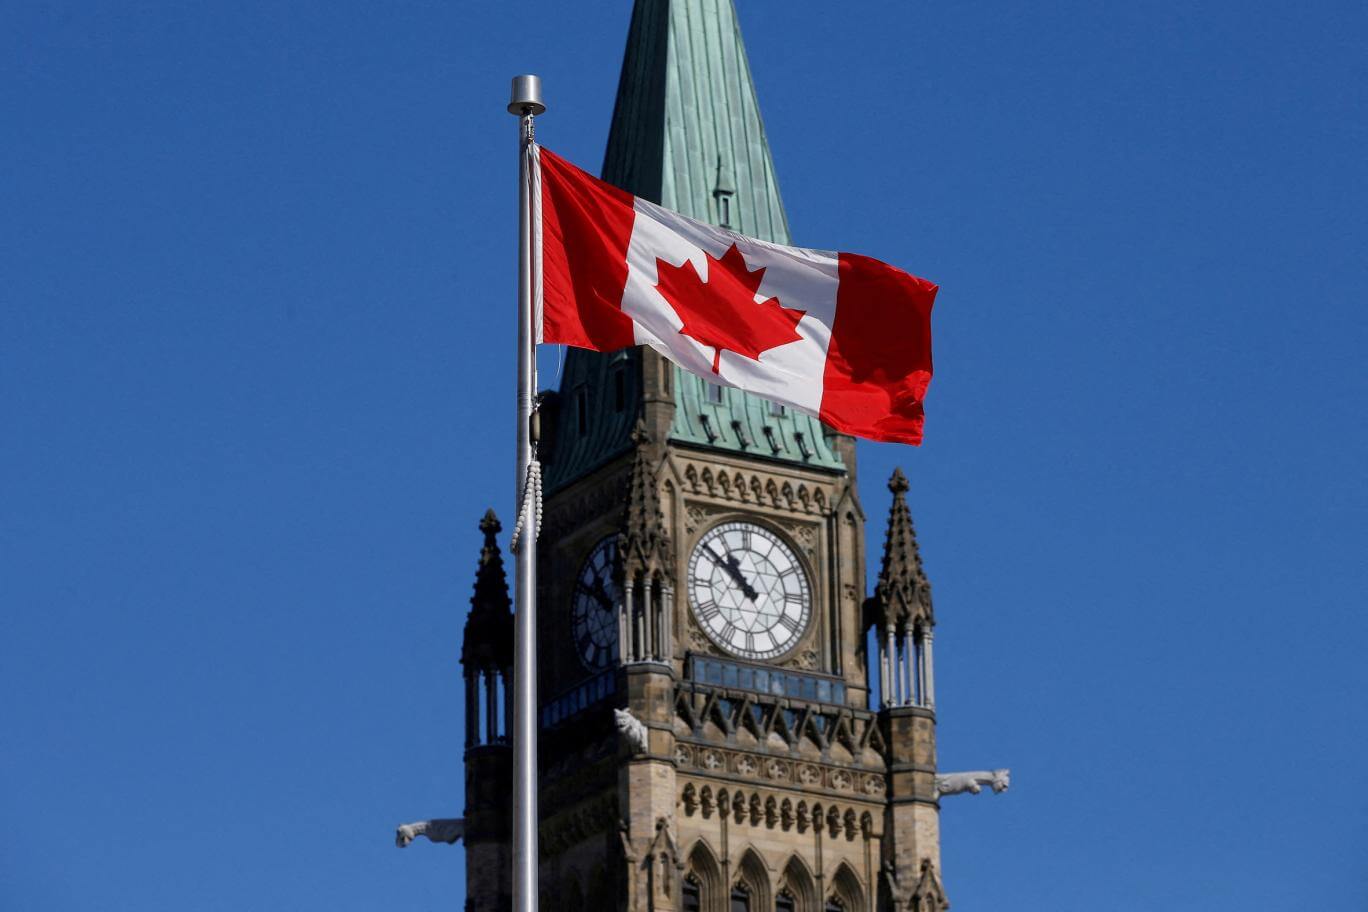 کانادا تسهیلات ویژه برای ایرانیان را یک سال دیگر تمدید کرد. ایرانیانی که با اقامت موقت معتبر در کانادا به‌سر می‌برند می‌توانند با تمدید بدون هزینه ویزای خود به کار و تحصیل و دیدار خانواده در کانادا ادامه دهند.